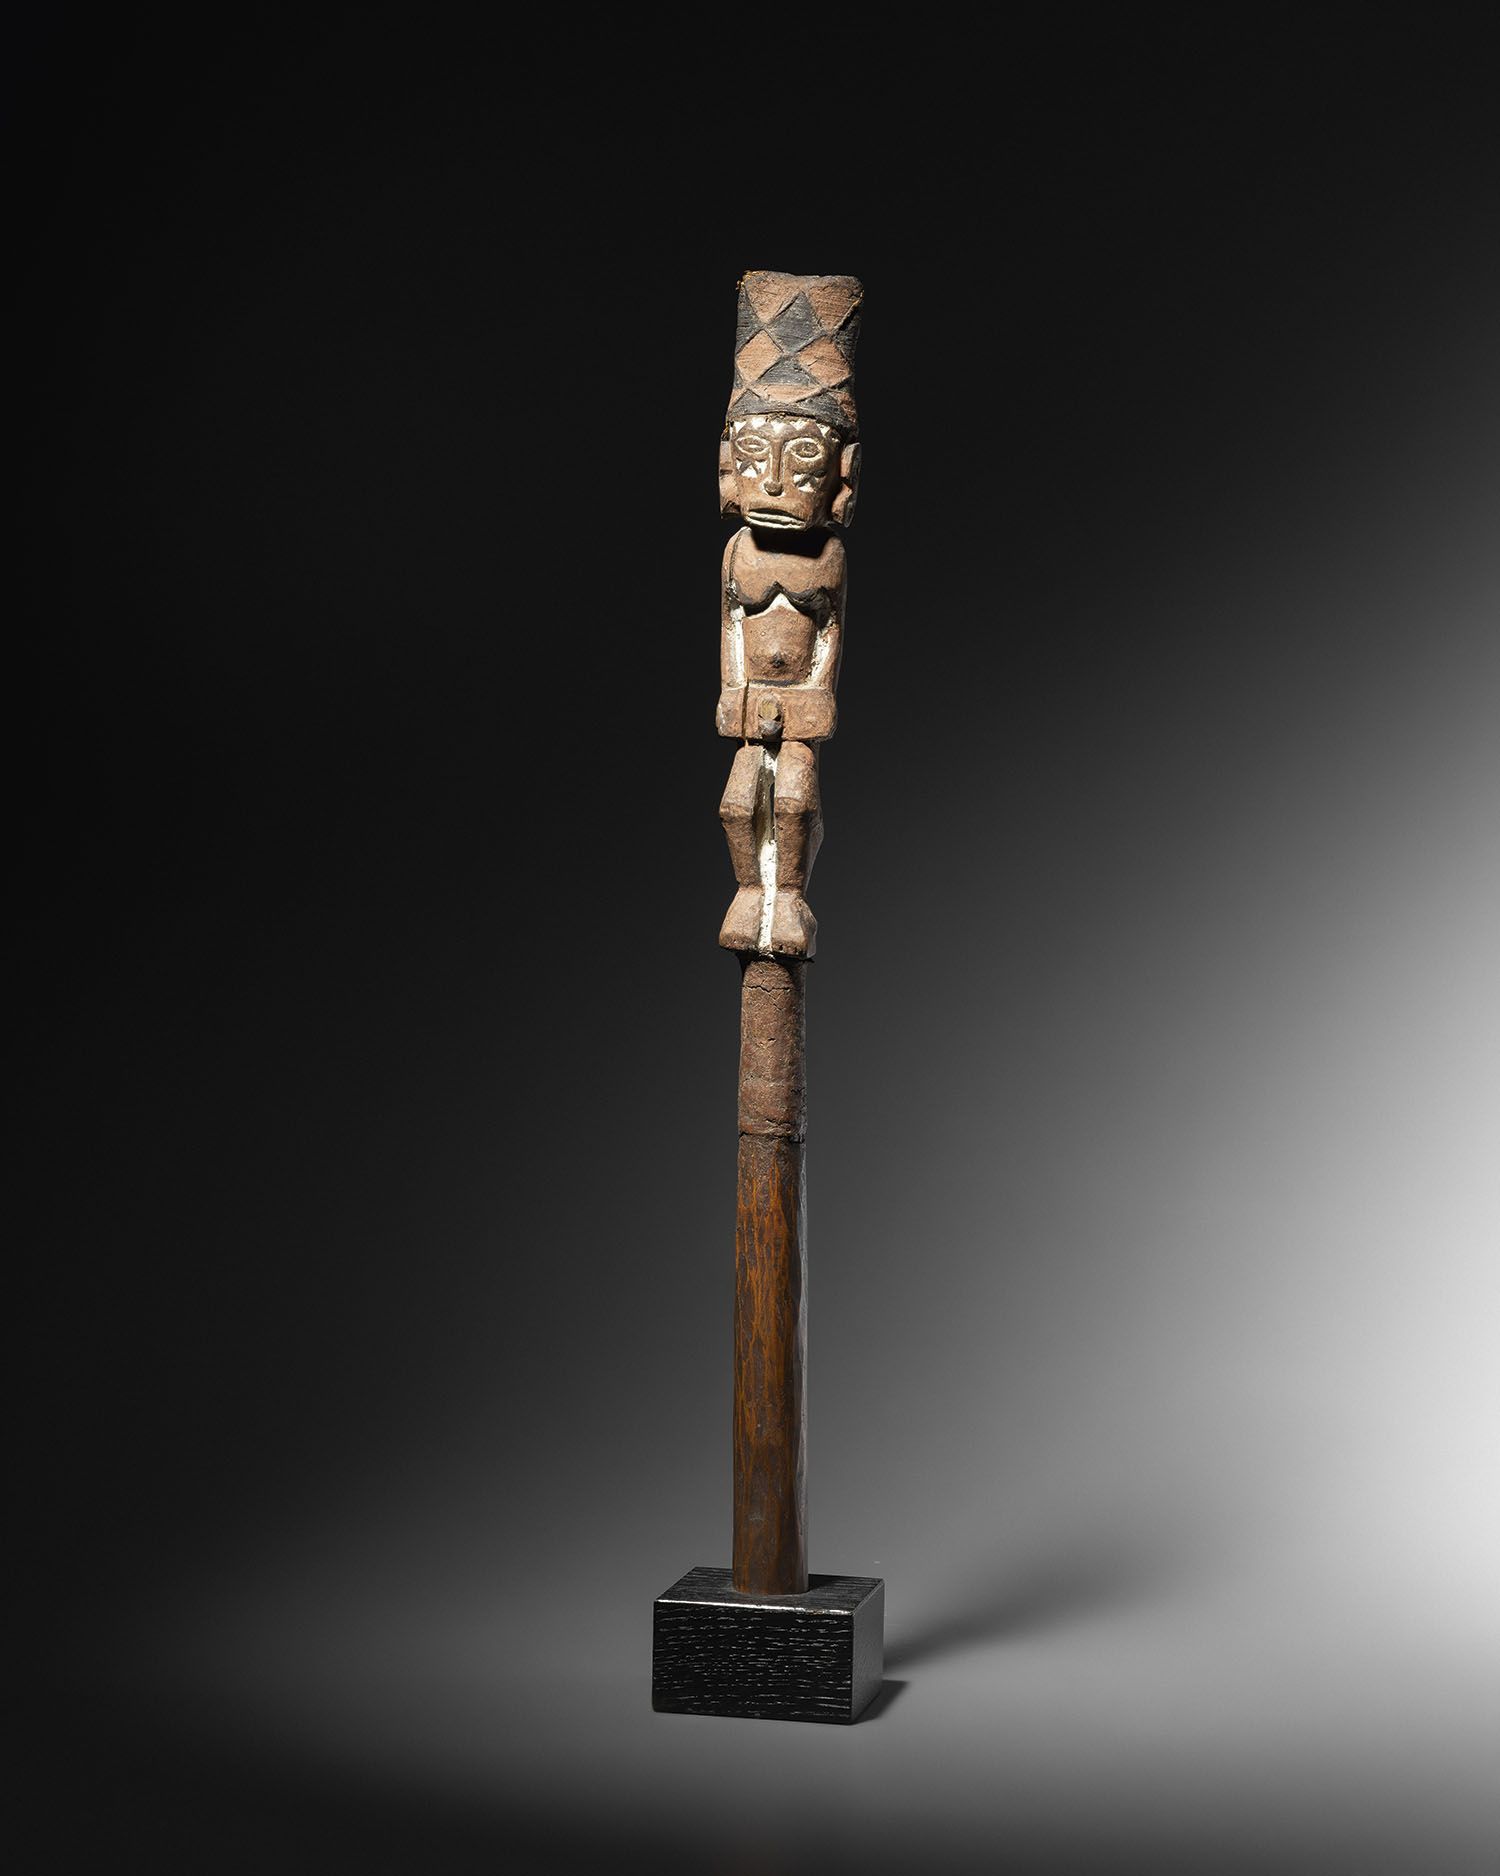 Null 仪式用的矛顶，金钟岛，俾斯麦群岛，巴布亚新几内亚
木材，纤维，颜料
高38，5厘米
仪式用的顶杖，巴布亚新几内亚
高。15 3/16 in
出处：
-&hellip;